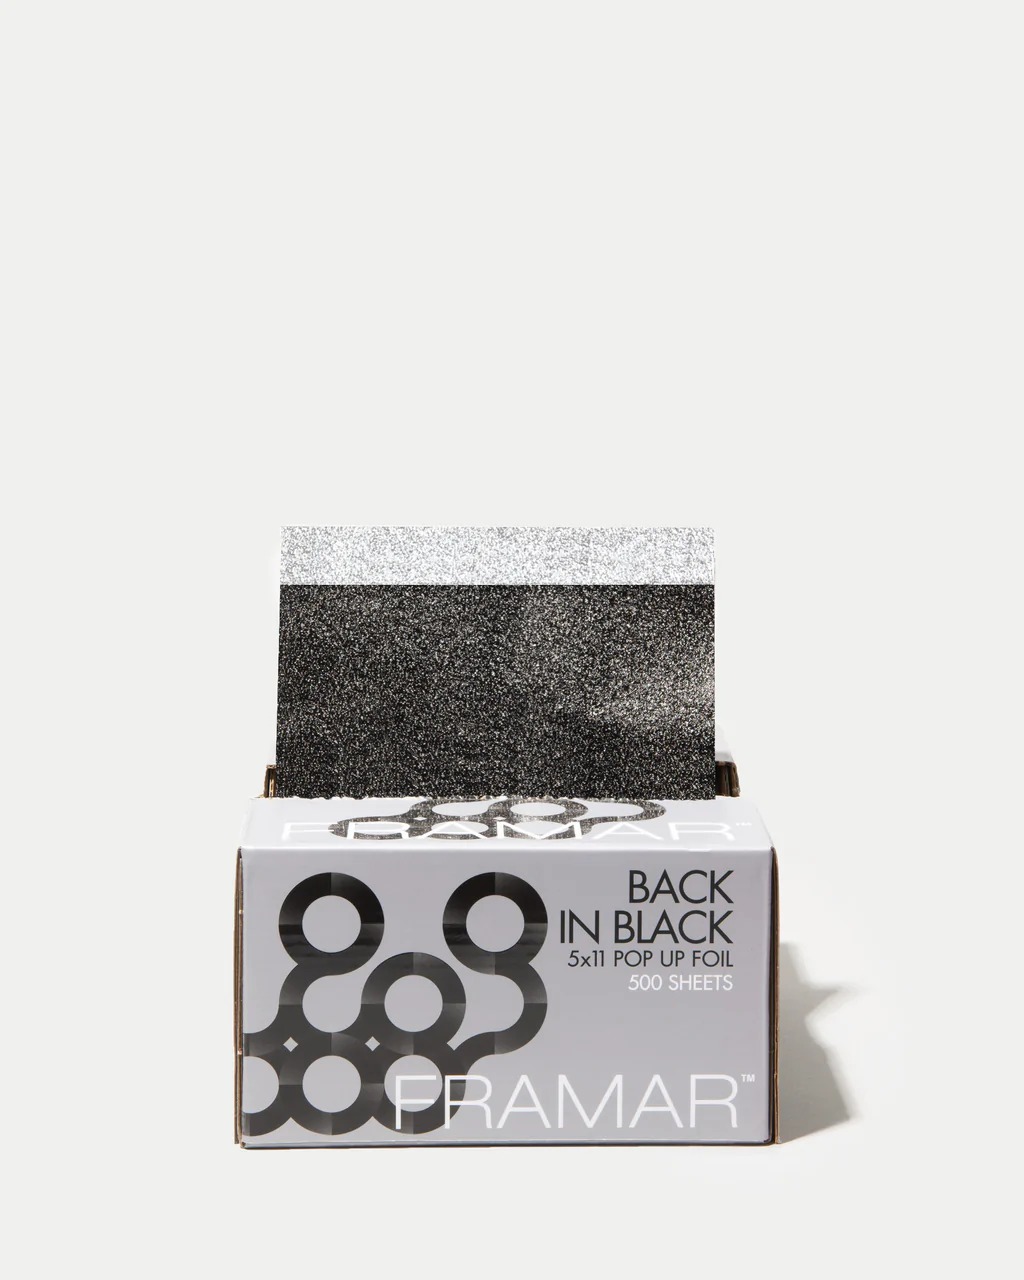 Framar - Folia Fryzjerska Back in Black 5x11 Pop Up Foil 500szt